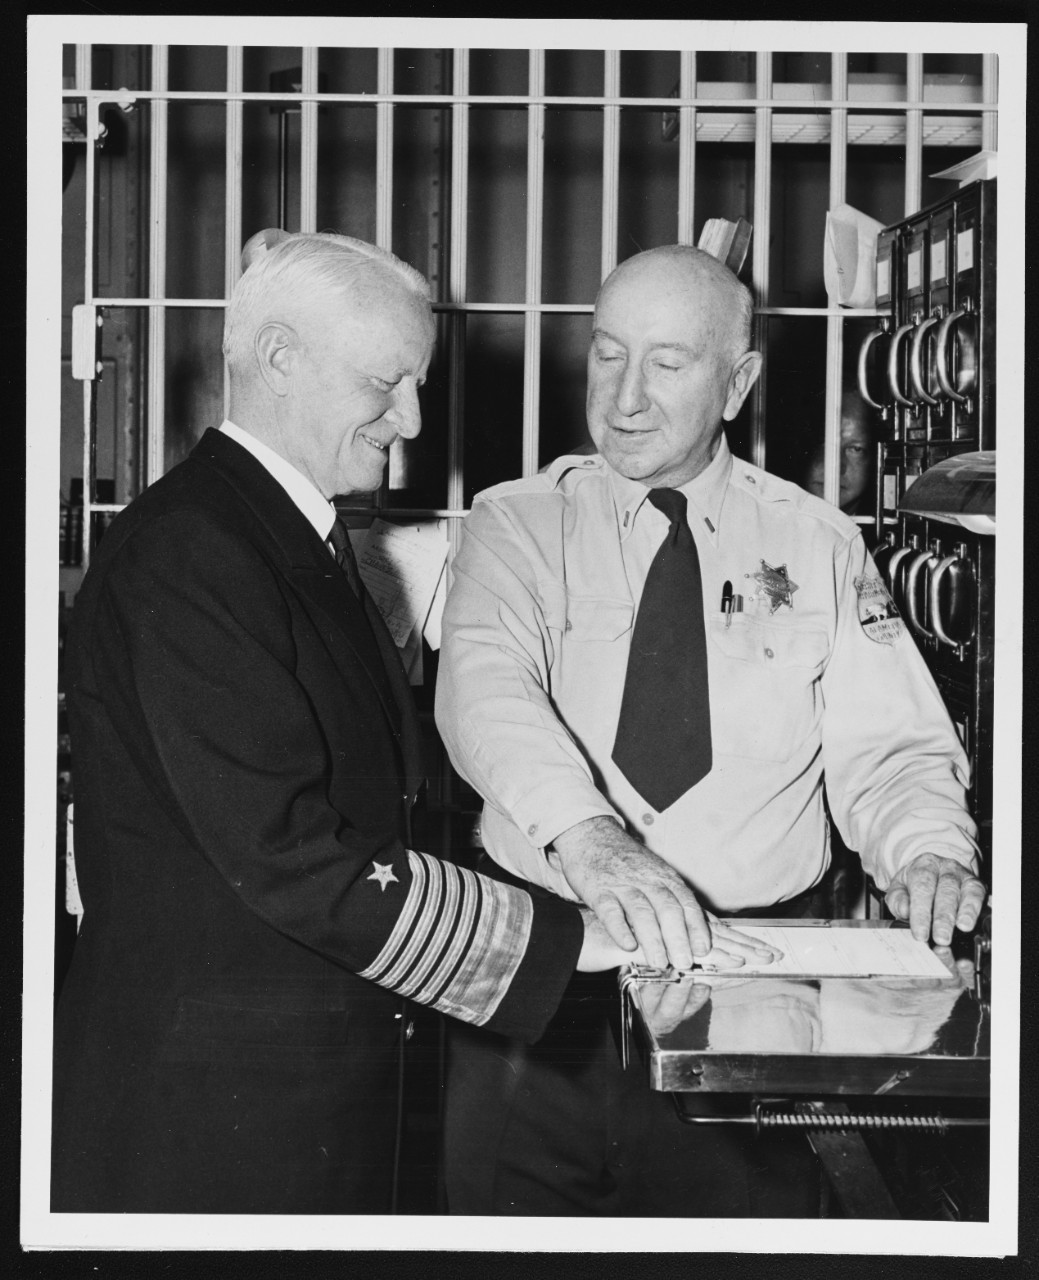 Fleet Admiral Nimitz is Fingerprinted